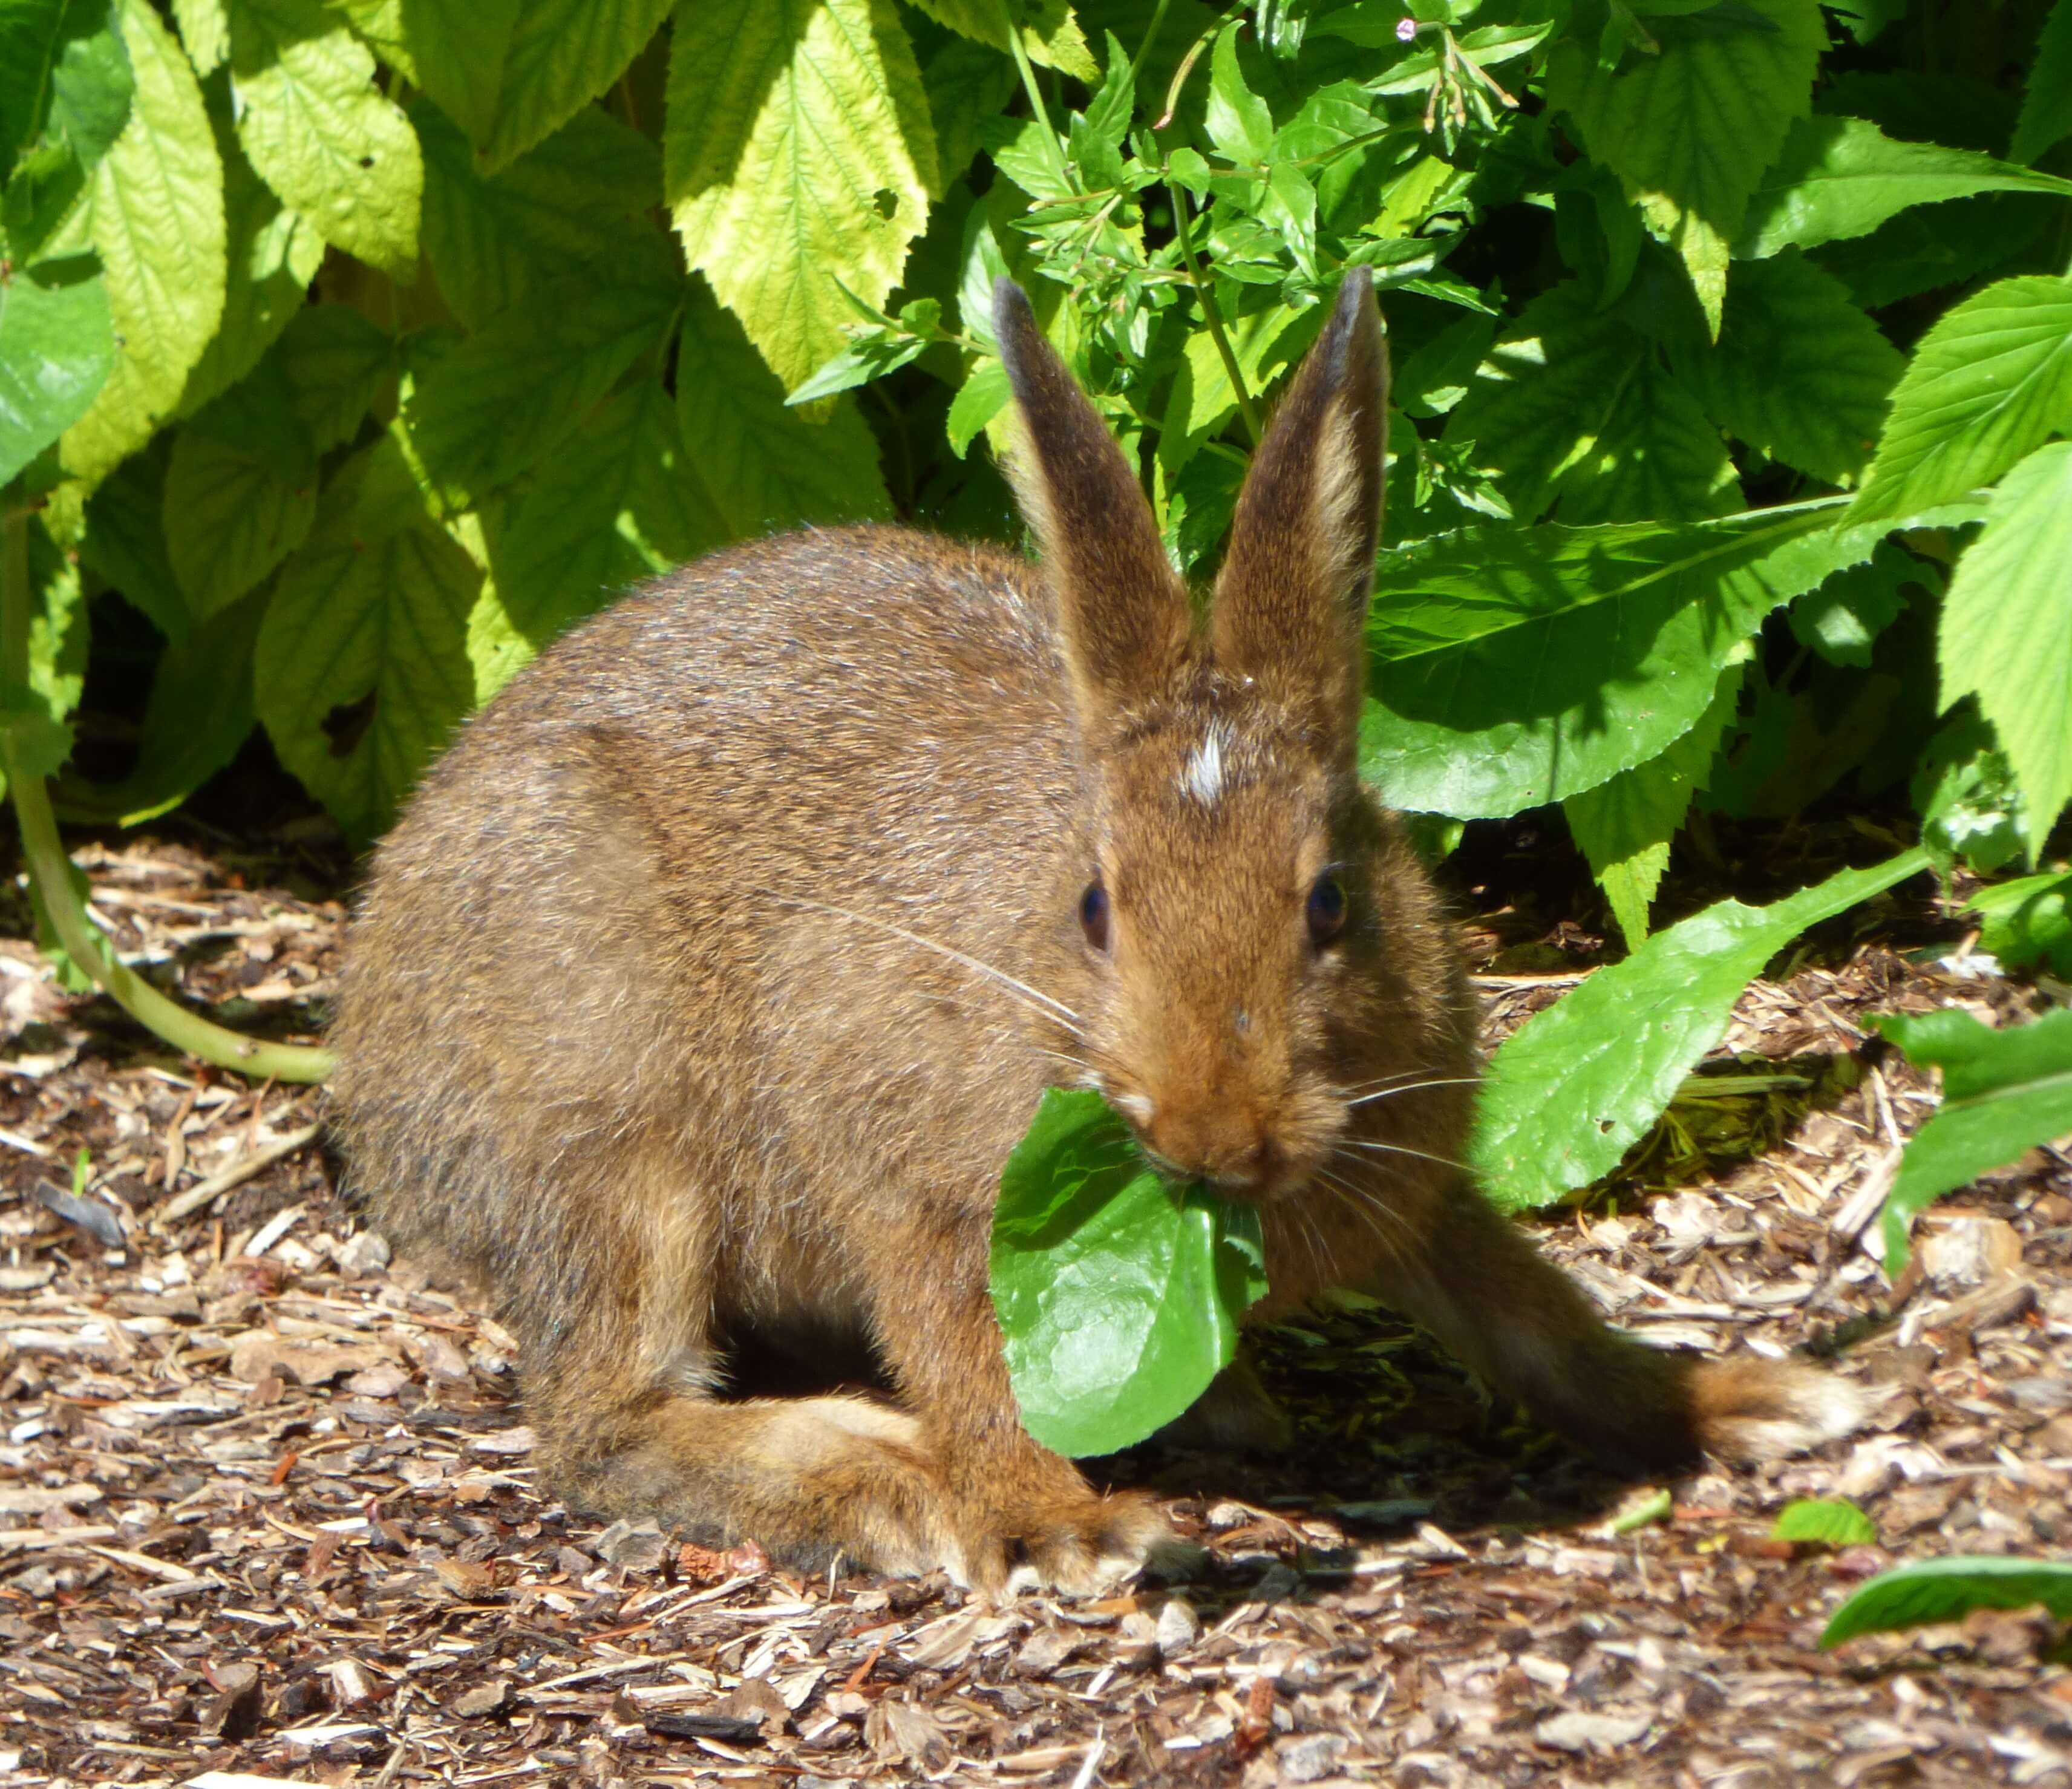 Wild rabbit in the garden